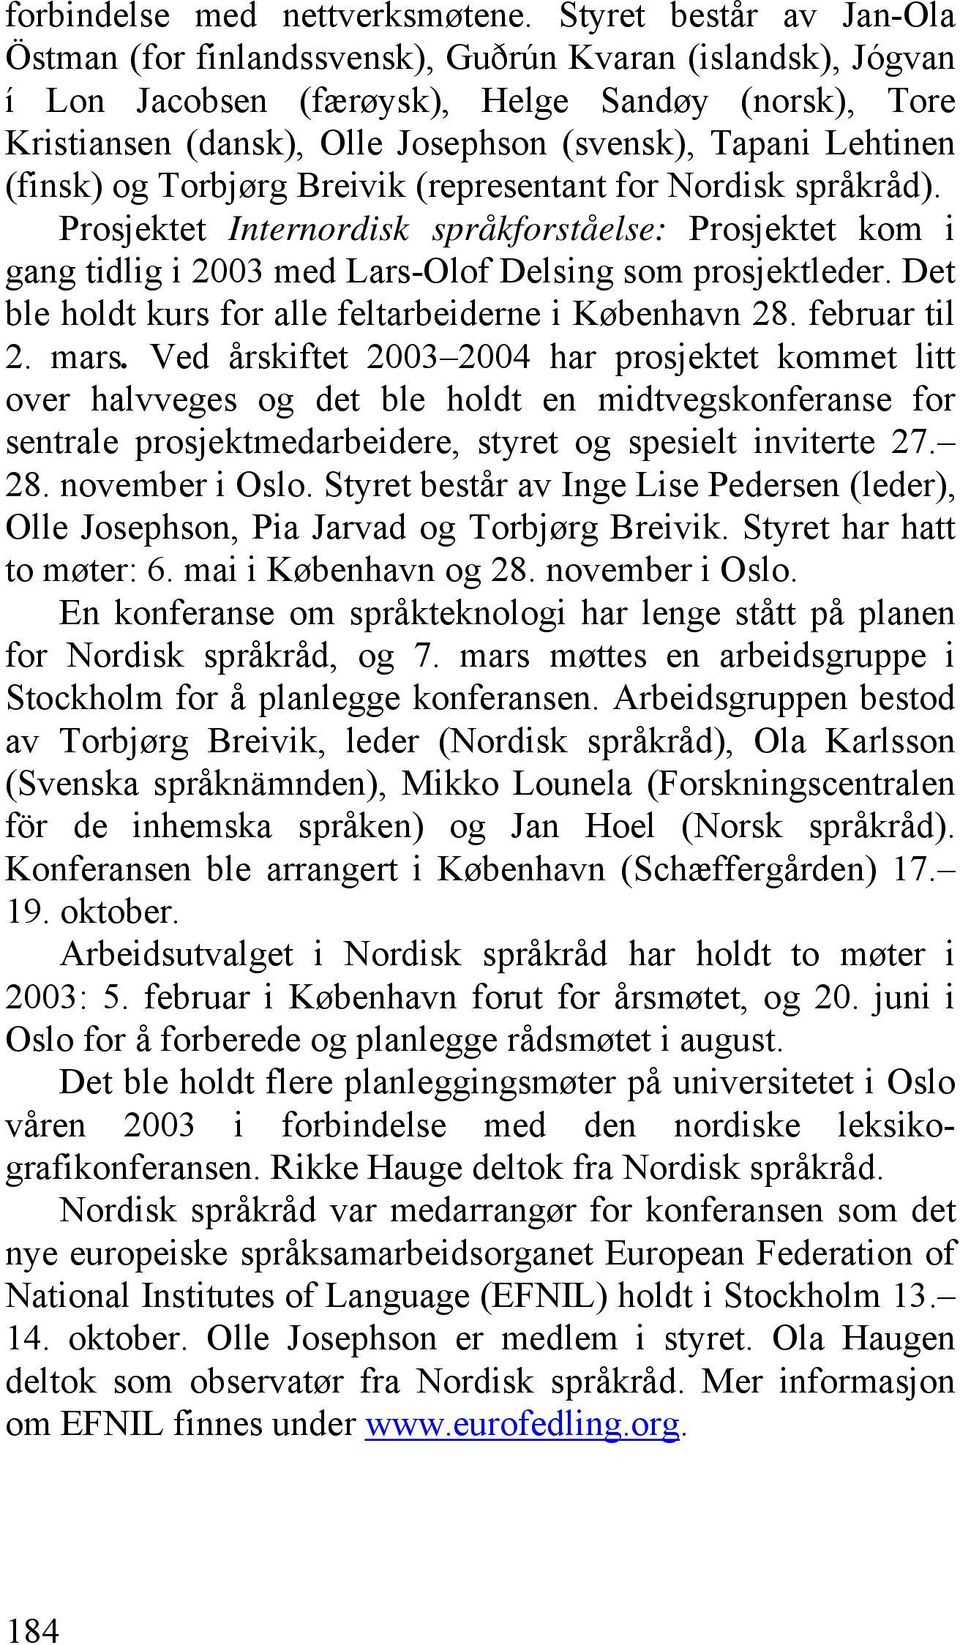 Lehtinen (finsk) og Torbjørg Breivik (representant for Nordisk språkråd). Prosjektet Internordisk språkforståelse: Prosjektet kom i gang tidlig i 2003 med Lars-Olof Delsing som prosjektleder.